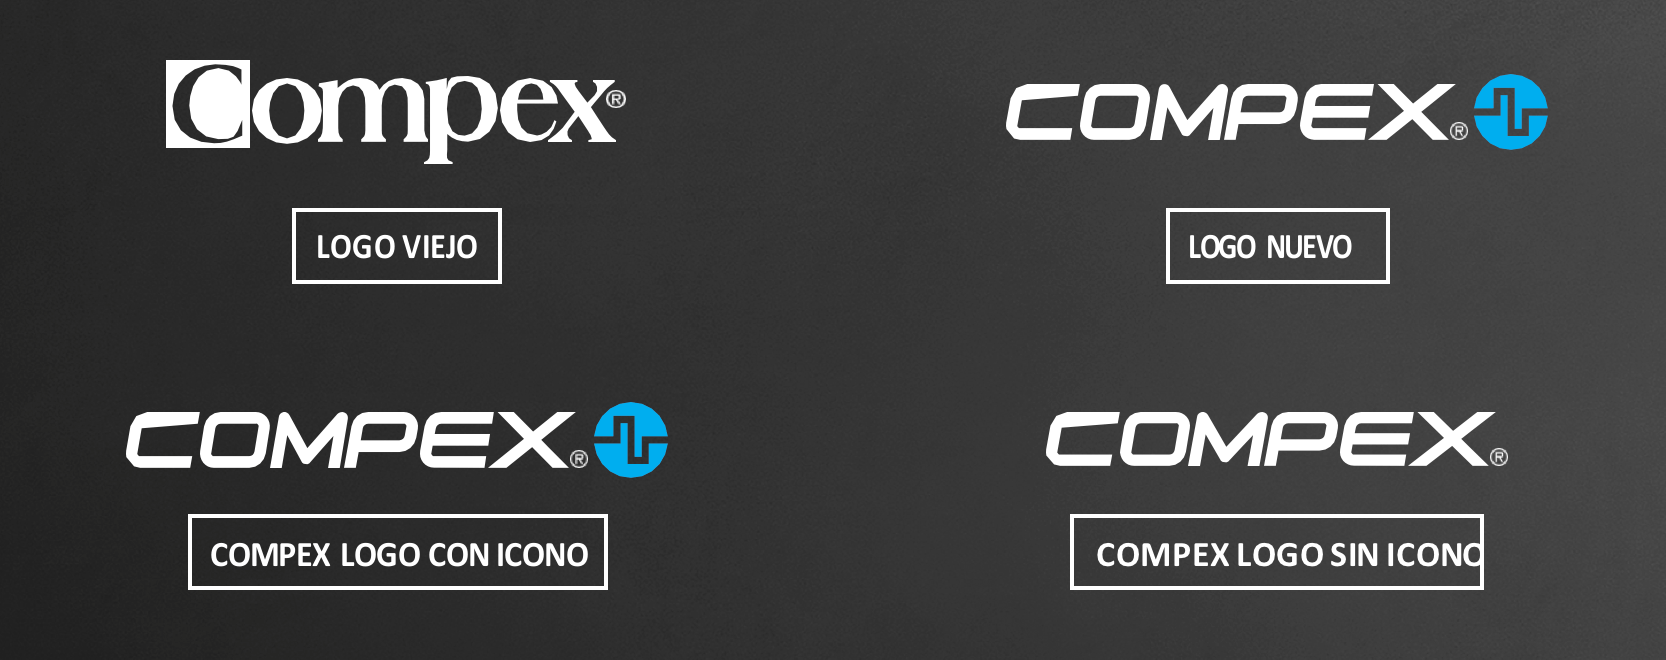 Cambios en el logo de Compex